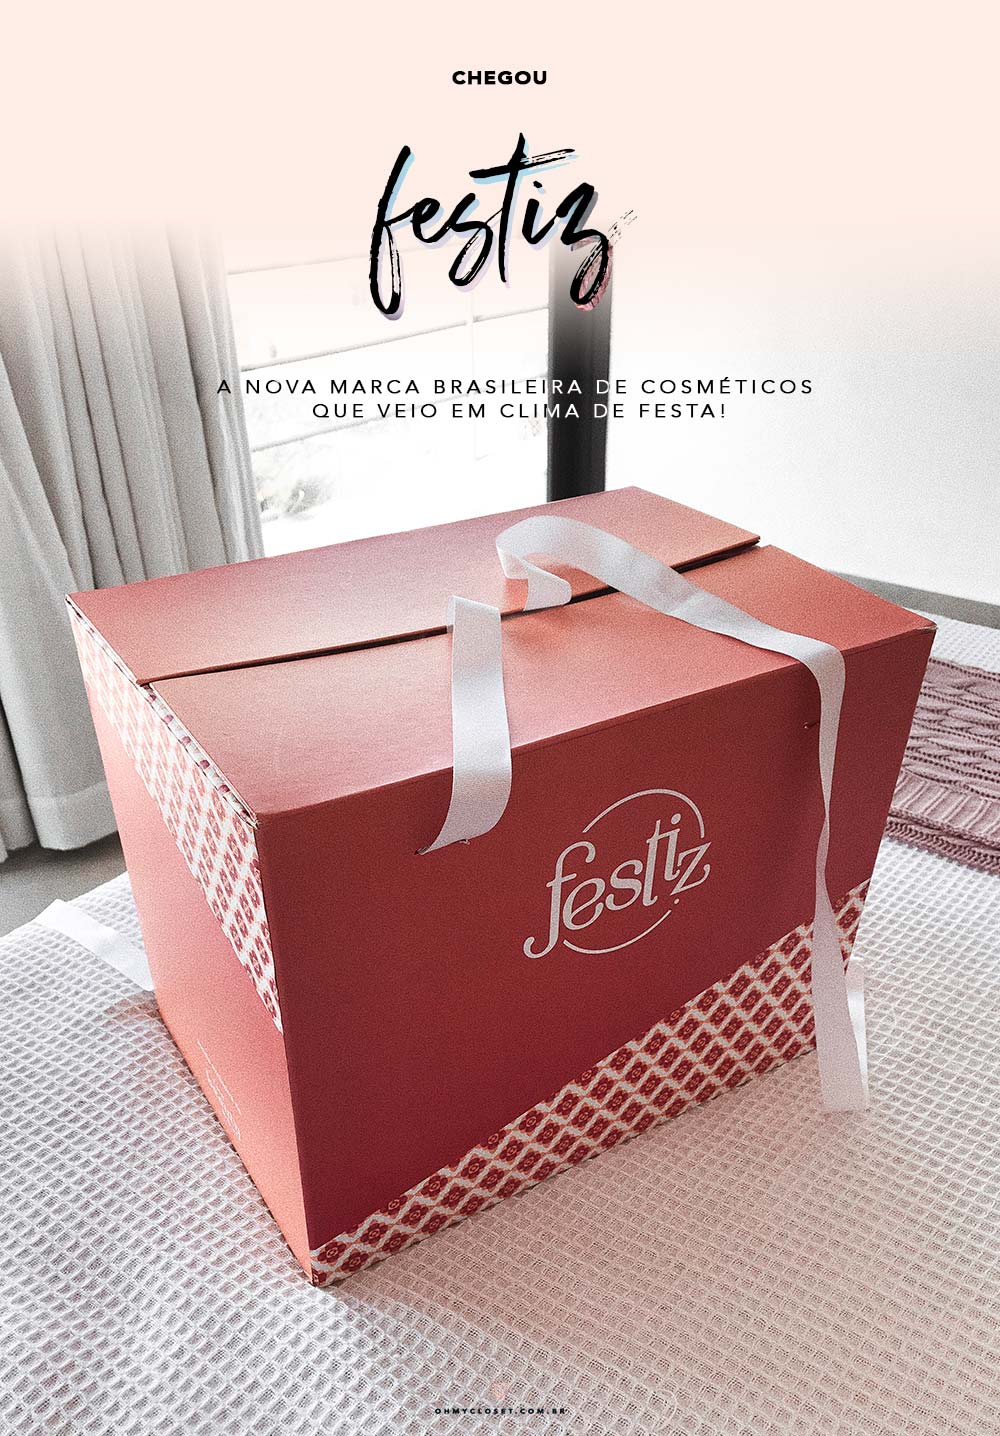 Caixa com produtos da Festiz, nova marca de cosméticos com venda exclusiva na The Beauty Box.